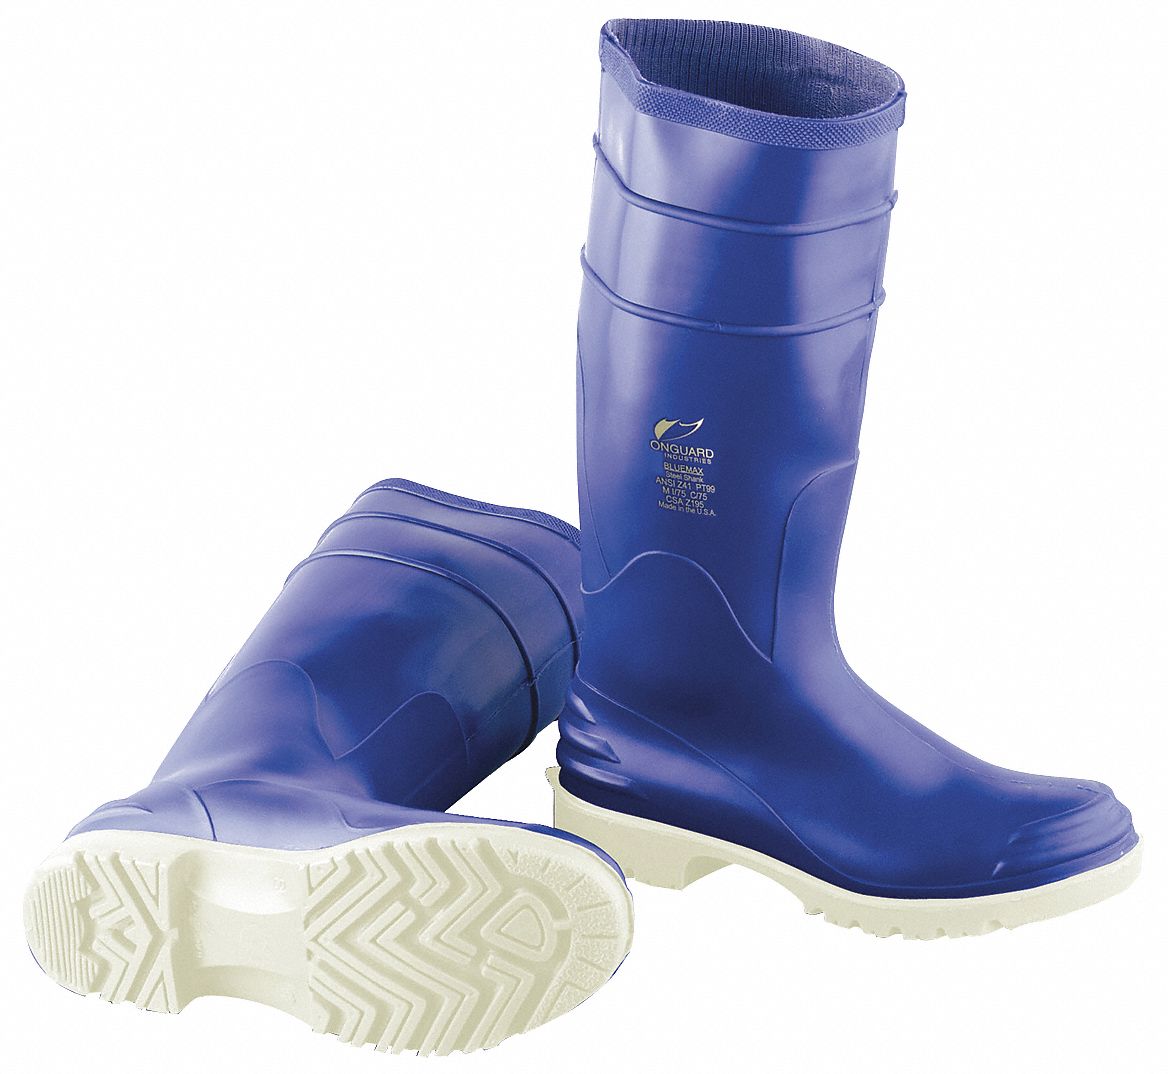 33VN06 - Boots Size 10 16 Height Blue Plain PR